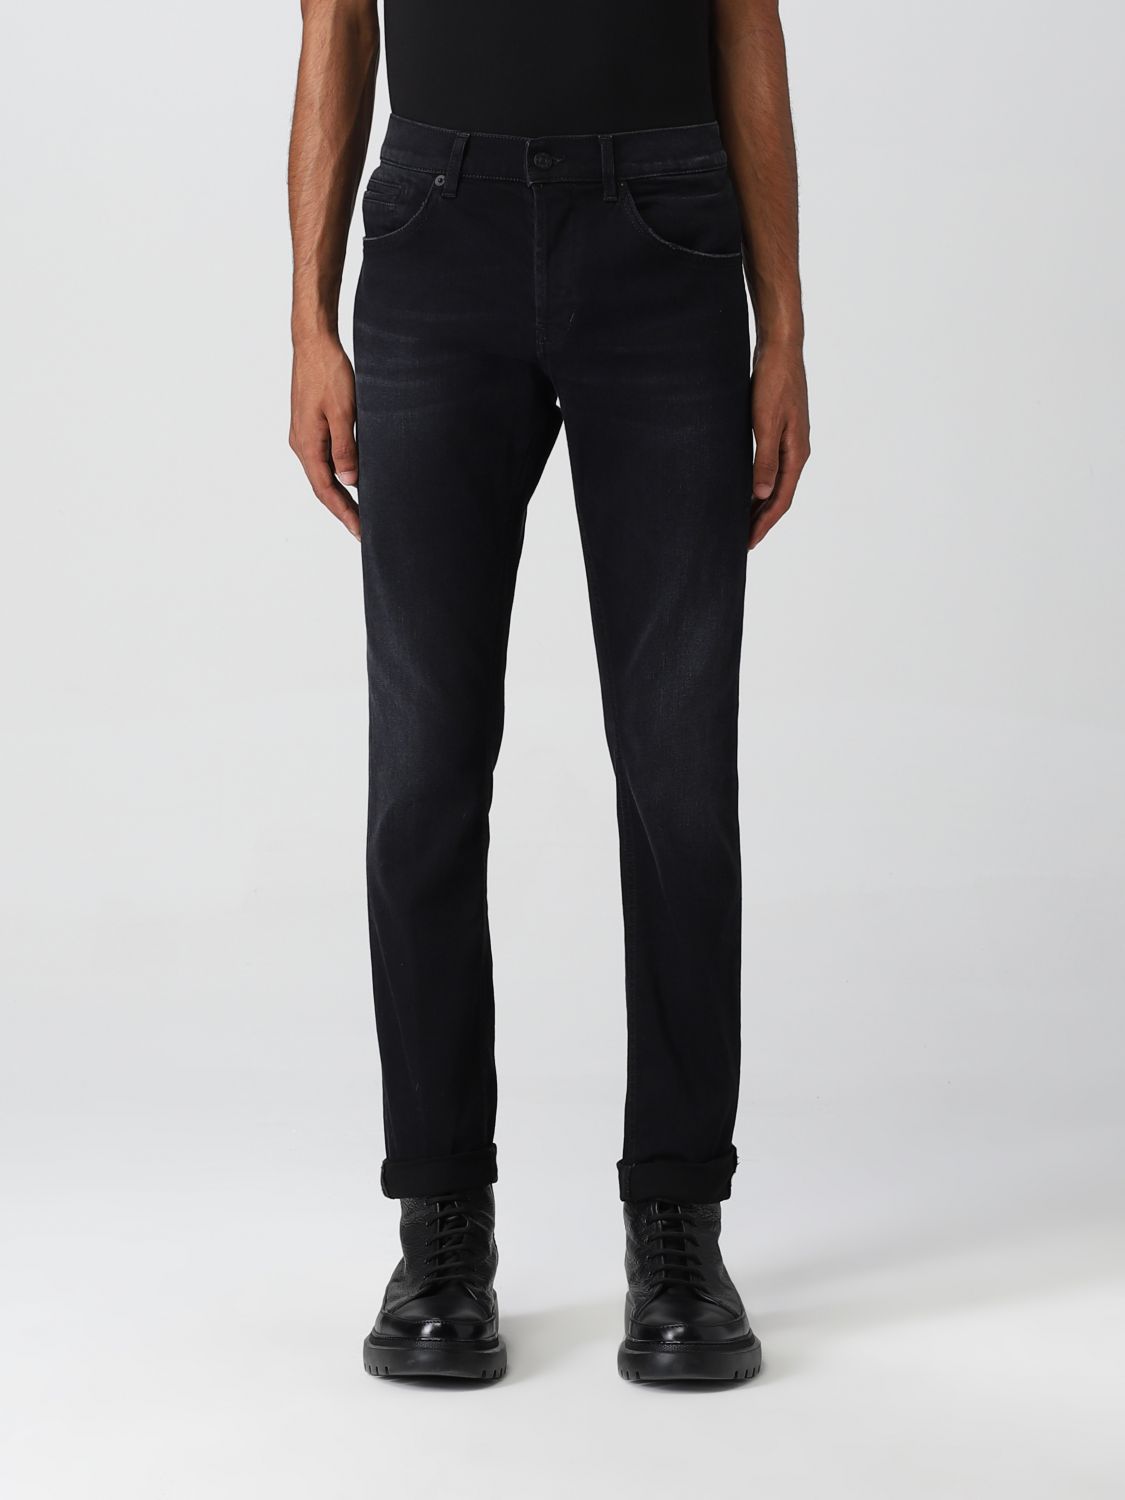 DONDUP: jeans for man - Black | Dondup jeans UP232DSE249UDL6 online on ...